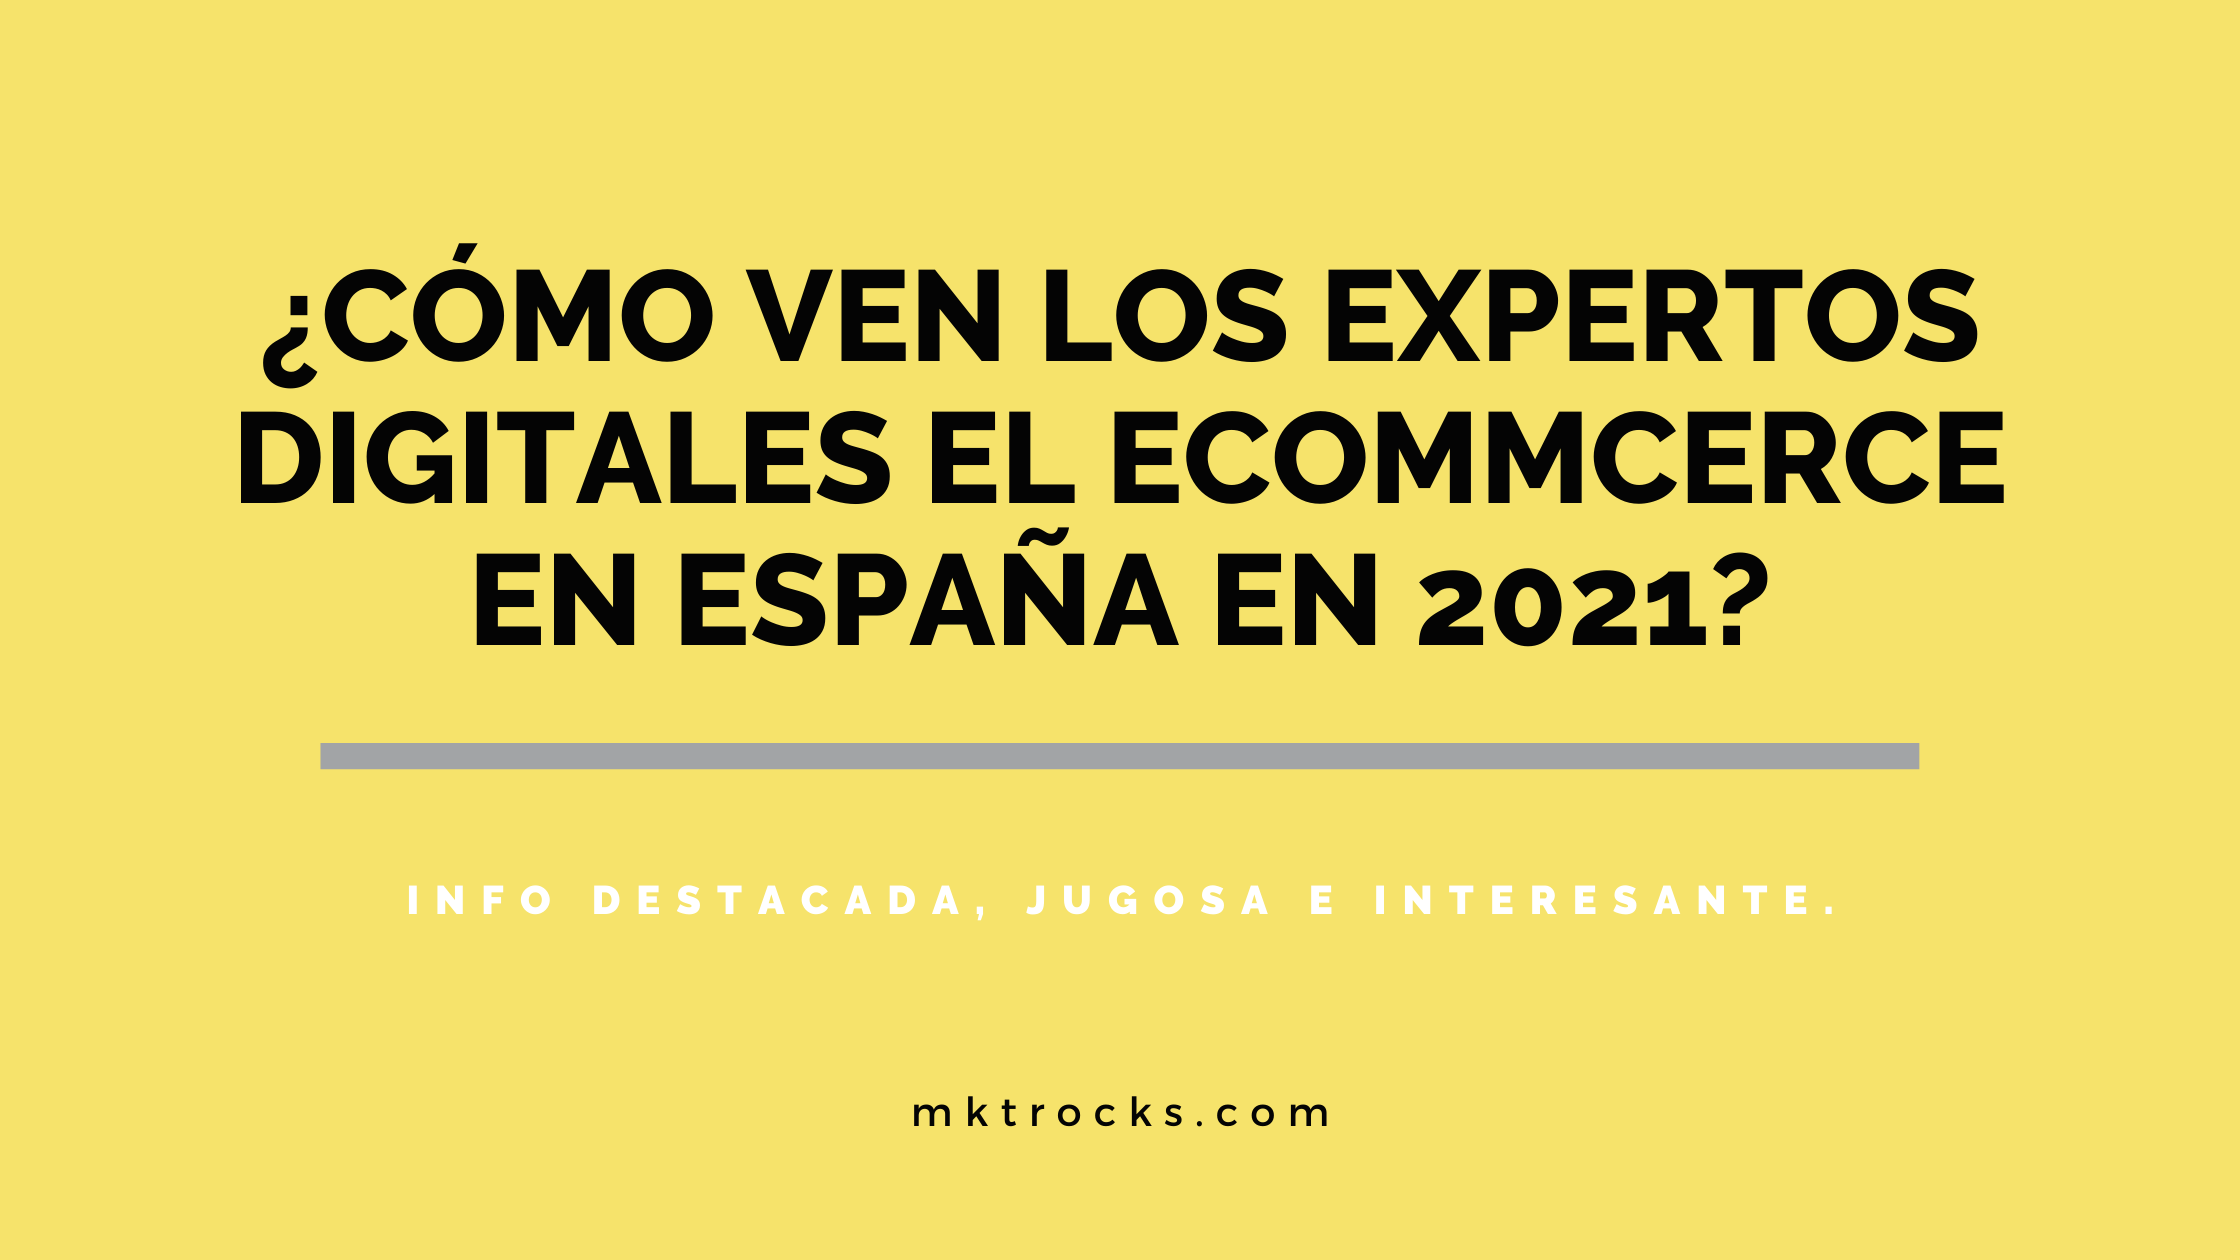 ¿Cómo ven los expertos digitales el ecommerce en España en 2021? – Informe Ecommerce